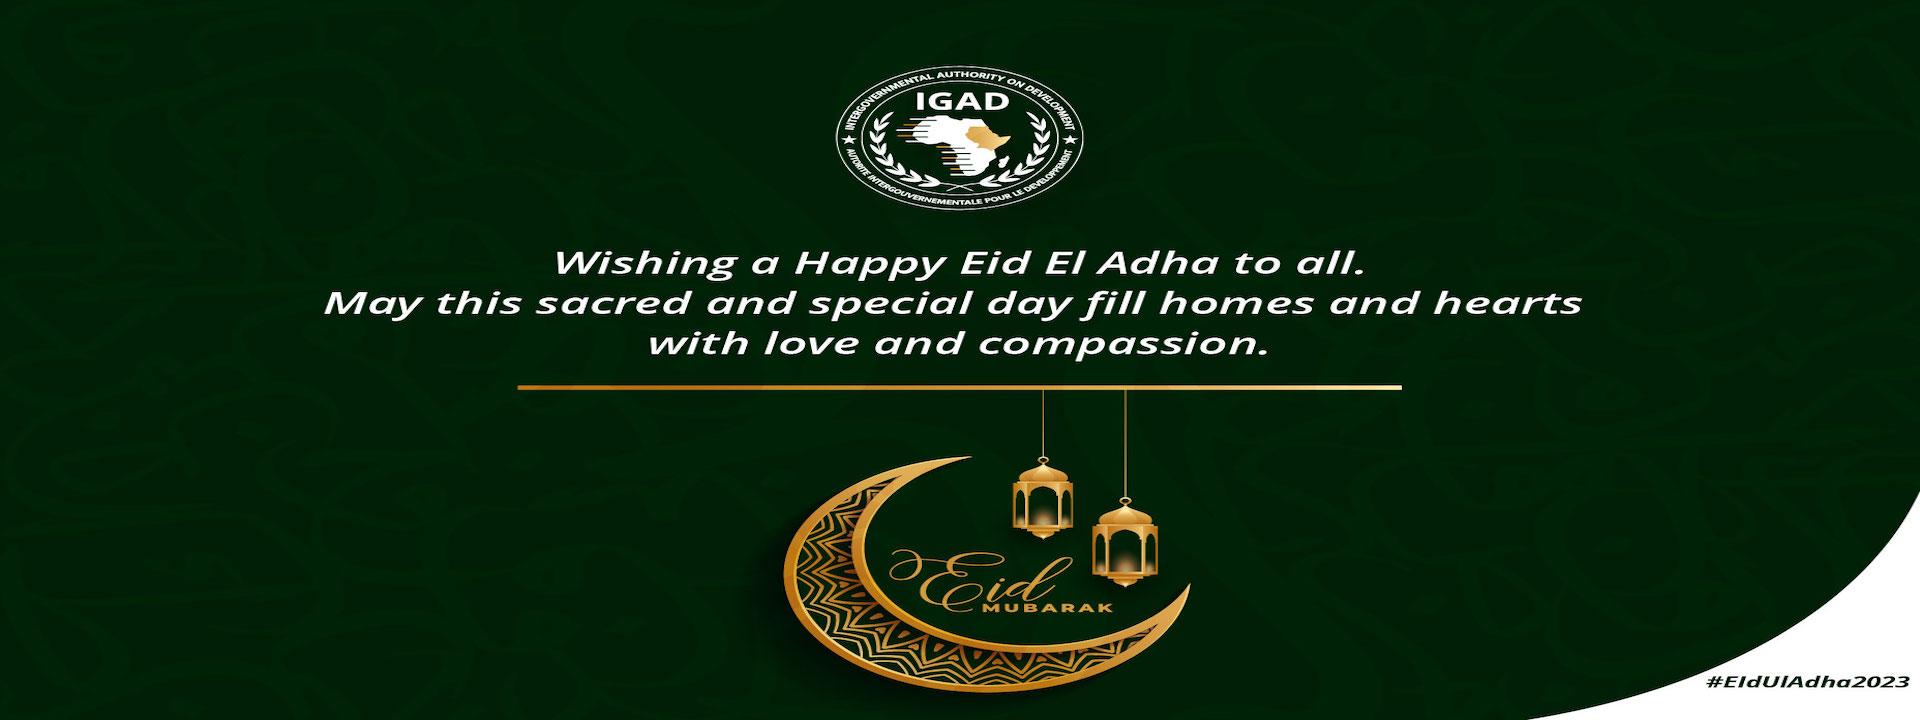 Happy Eid El Adha to all